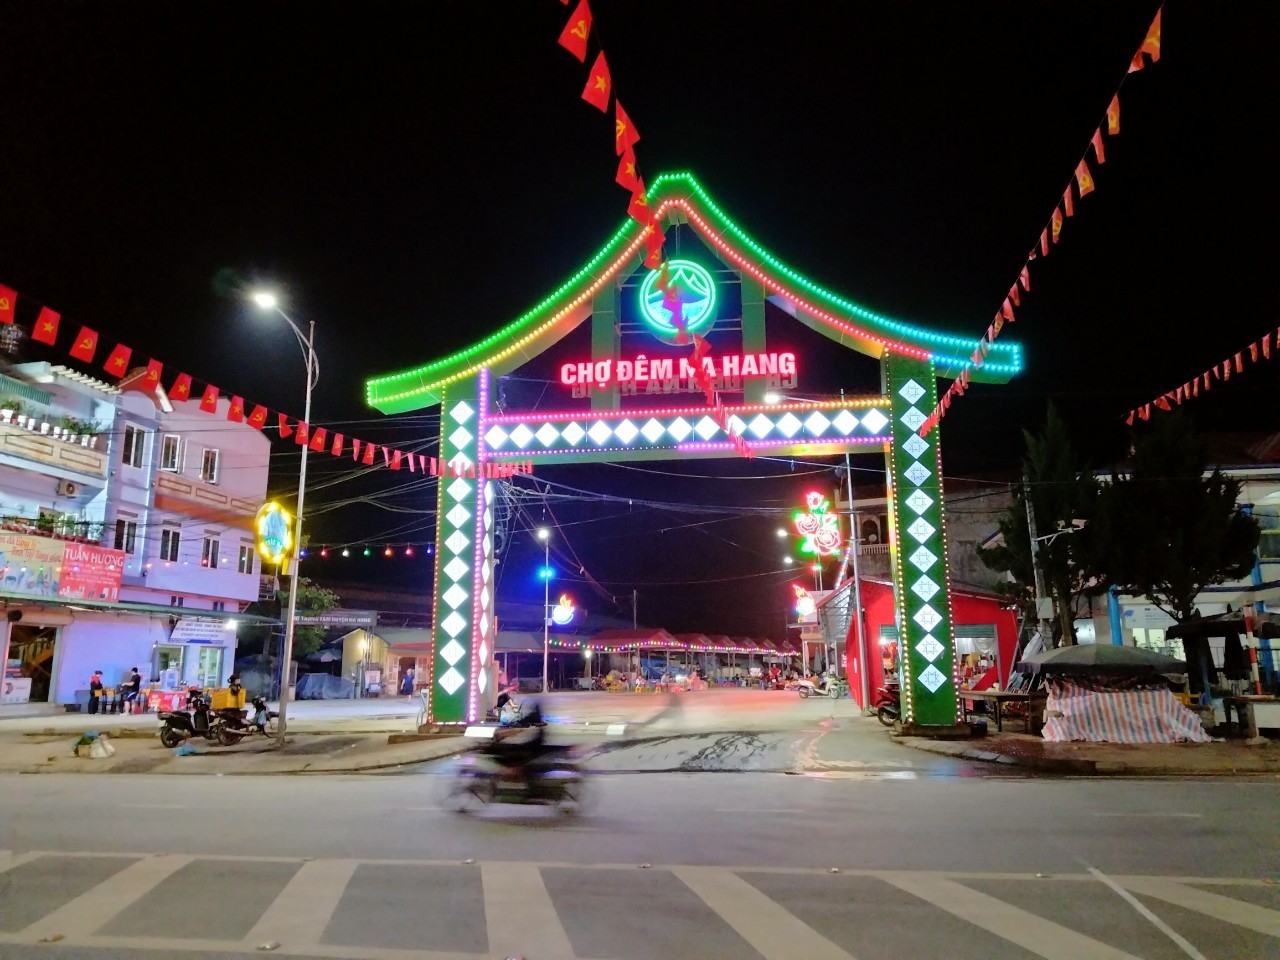 Chợ đêm thị trấn Na Hang sẵn sàng đón du khách tham quan, mua sắm 